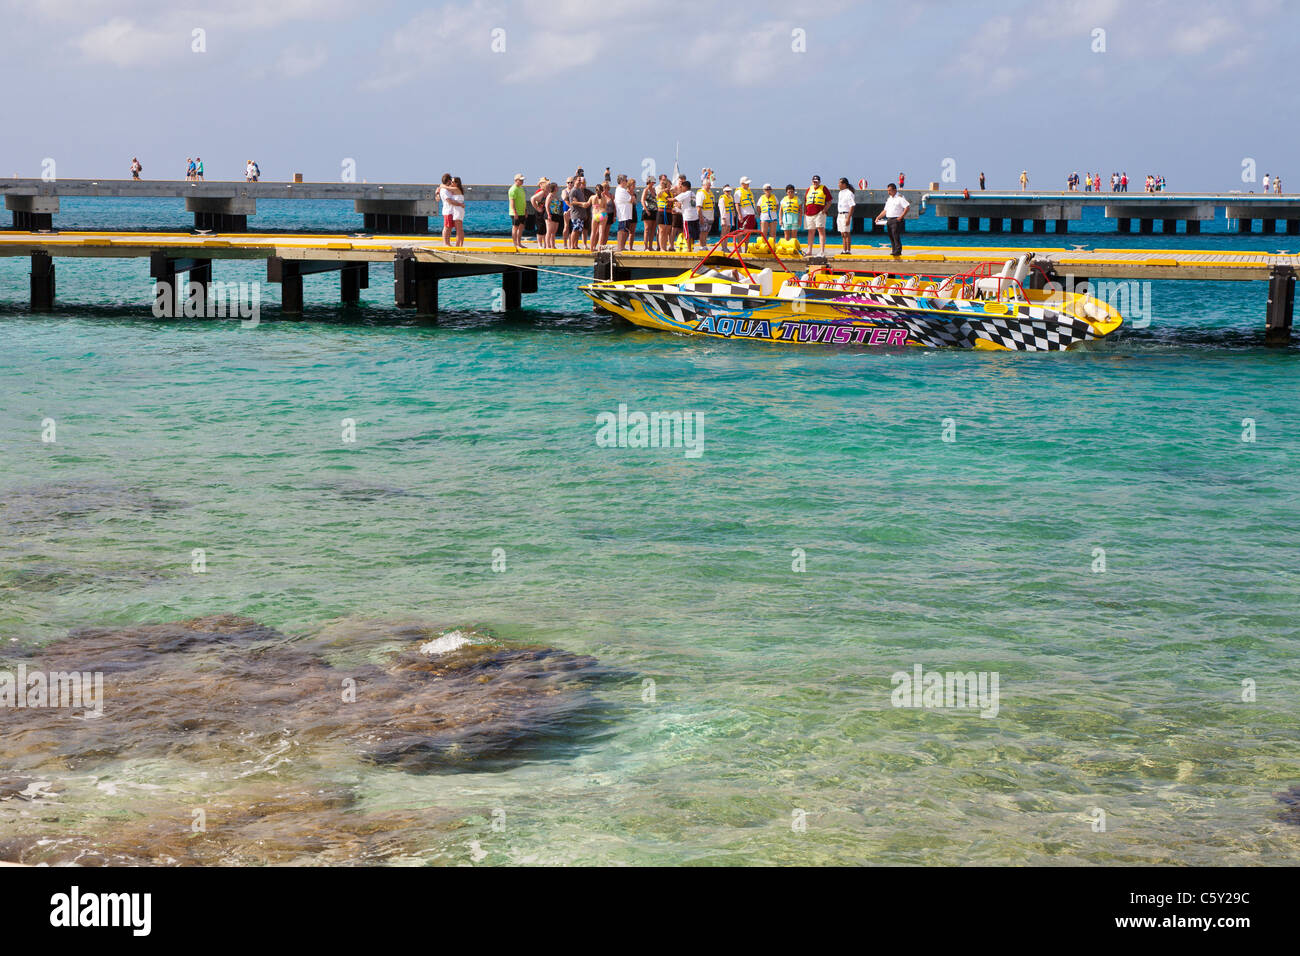 Kreuzfahrtschiff Passagiere für einen Aqua Twister Jet Bootsausflug auf der Anklagebank in Cozumel, Mexiko im karibischen Meer vorbereiten Stockfoto